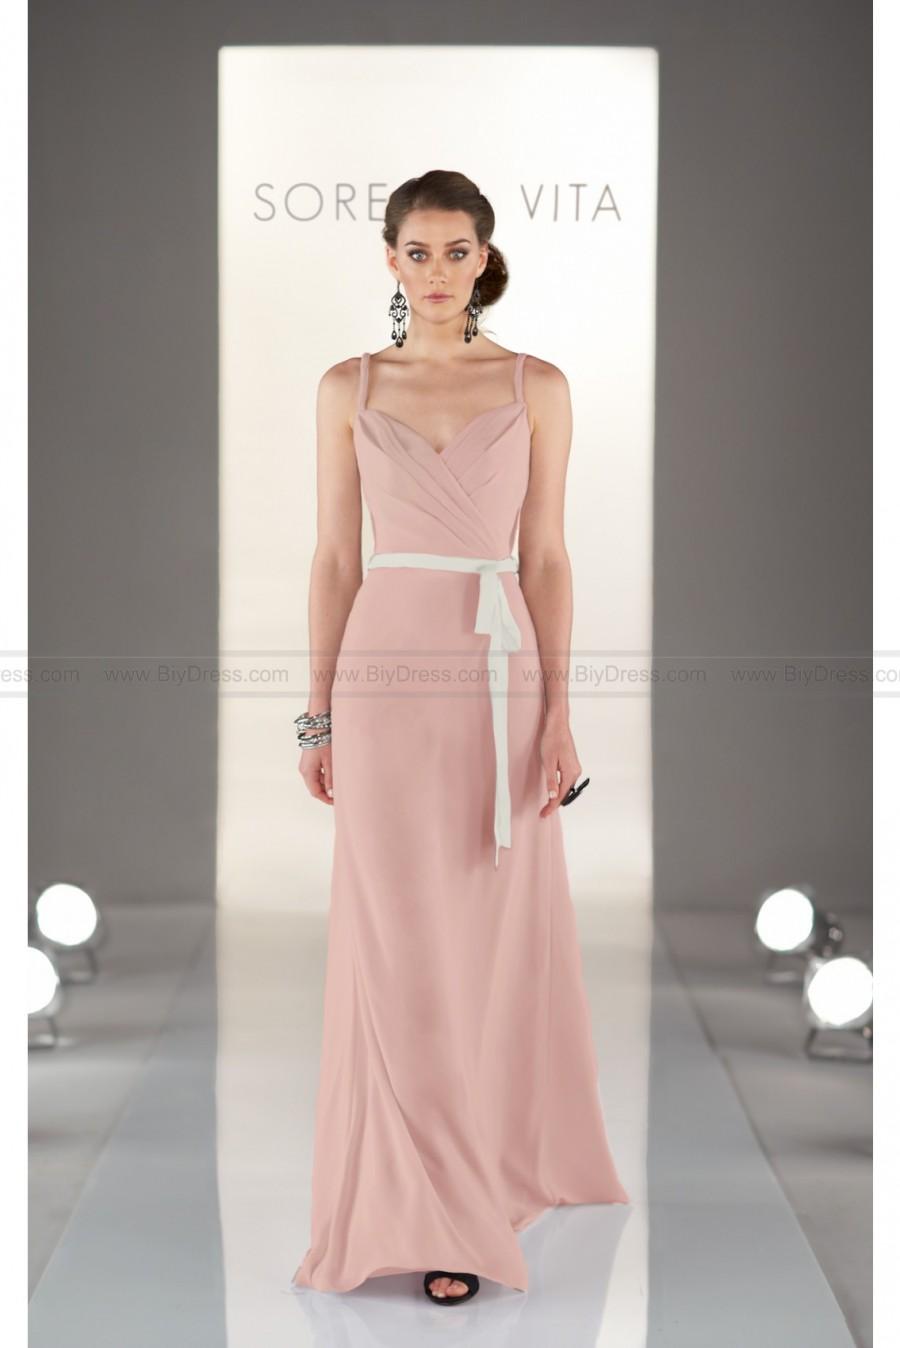 زفاف - Sorella Vita Cute Bridesmaid Dress Style 8386